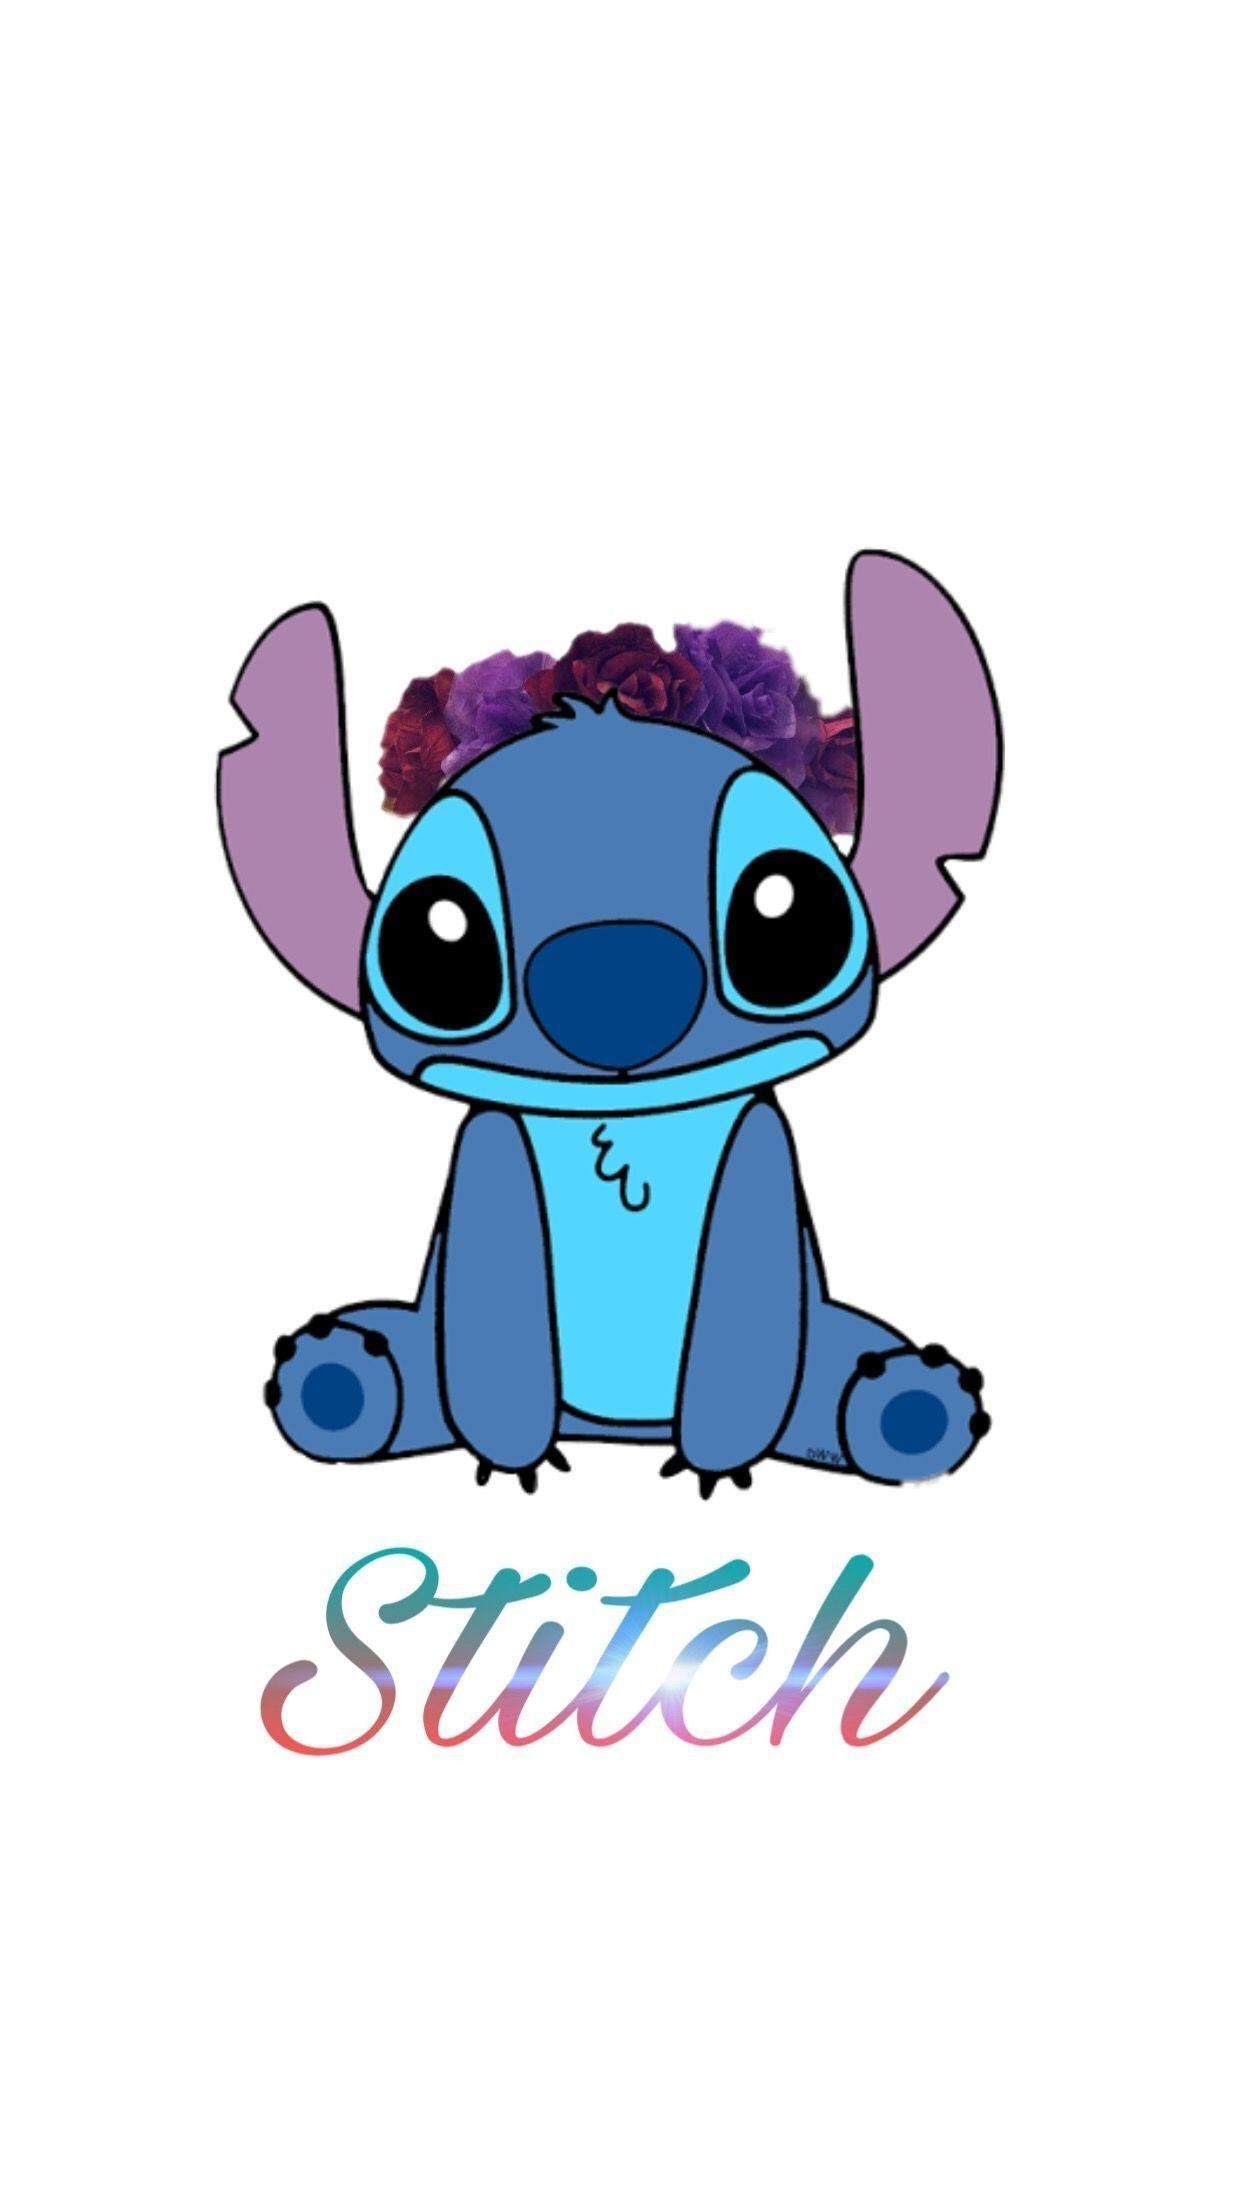 Cute Disney Stitch iPhone Wallpapers - Top Những Hình Ảnh Đẹp